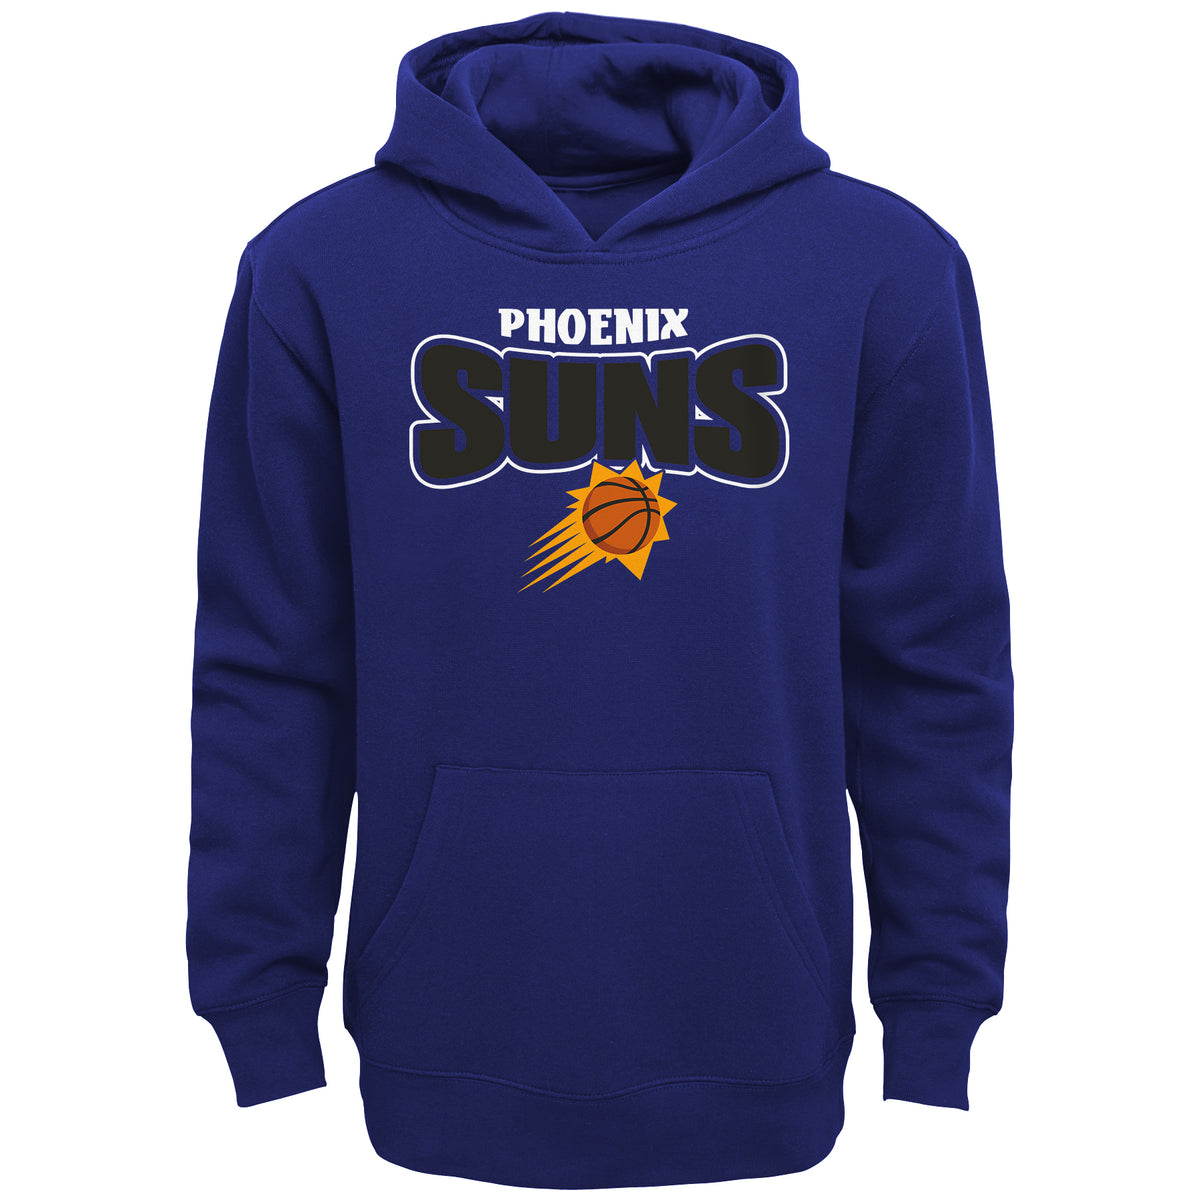 NBA Phoenix Suns Youth Outerstuff Draft Pick Hoodie